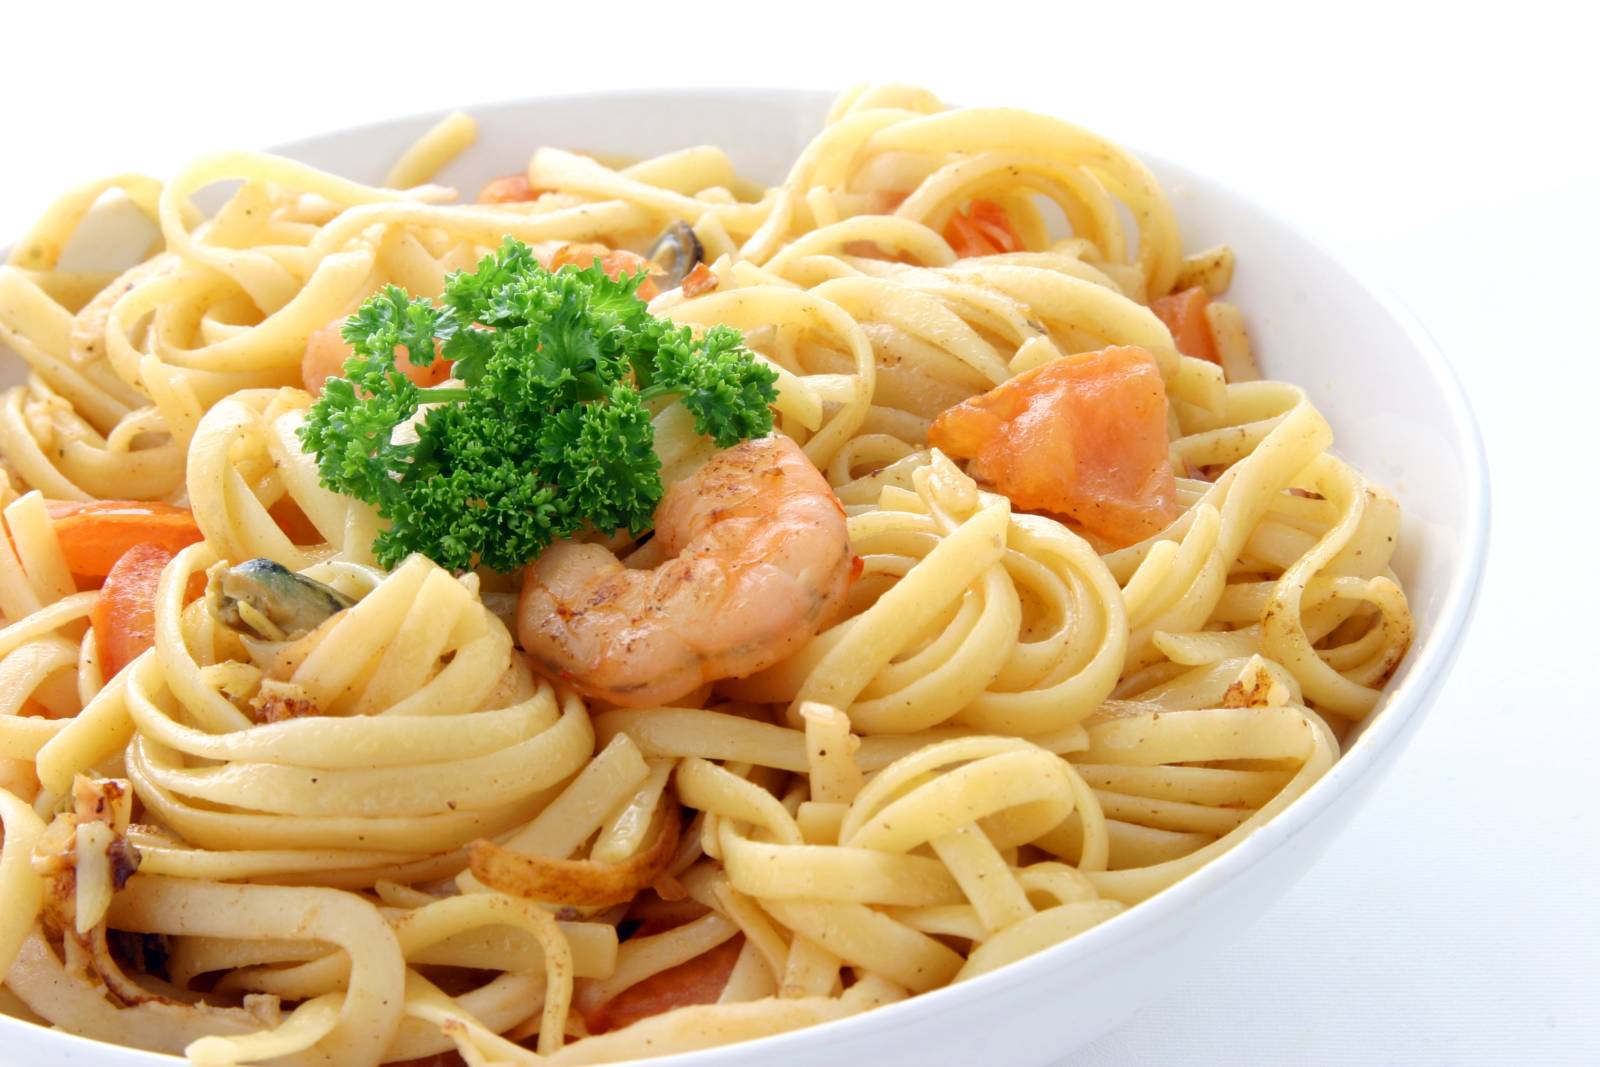 Špagety aglio e olio s krevetami